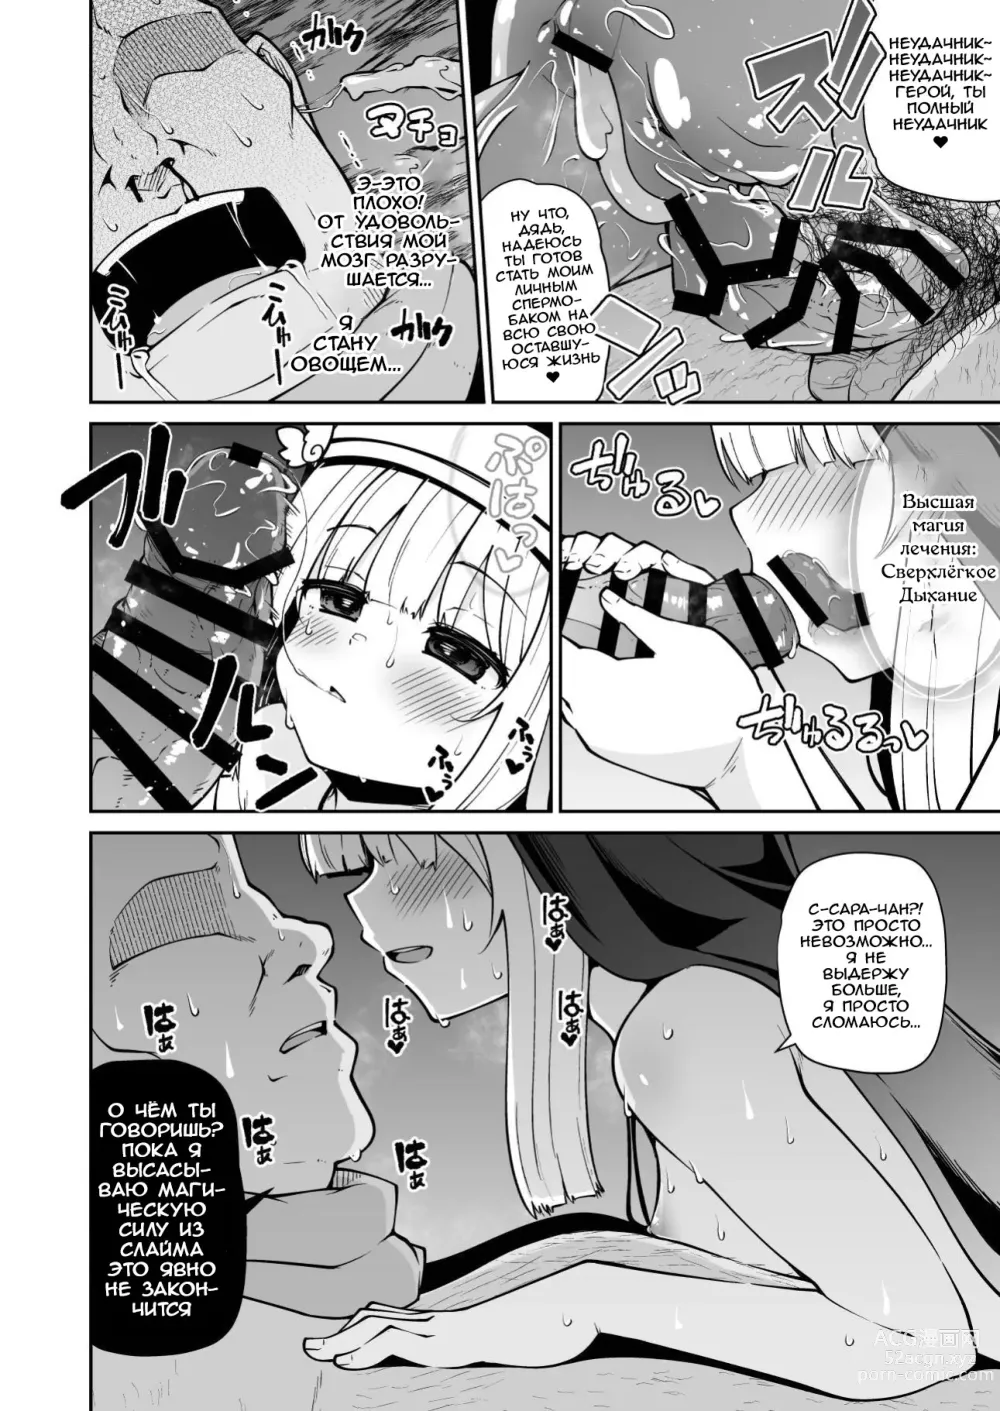 Page 29 of doujinshi Святая, Слайм и жалкий герой